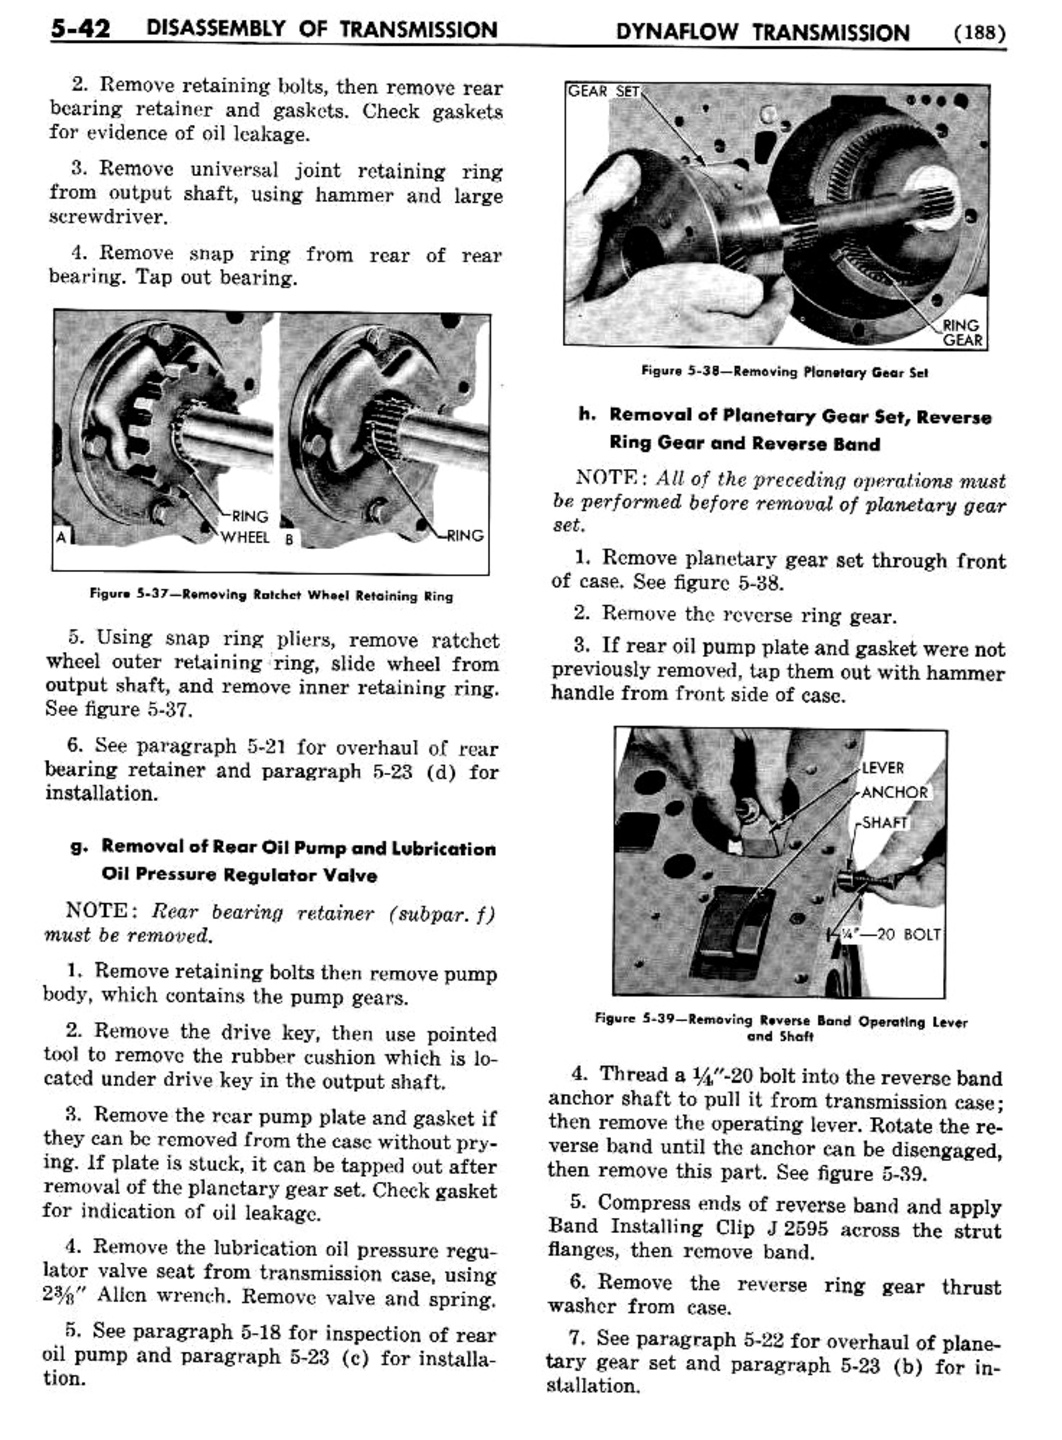 n_06 1956 Buick Shop Manual - Dynaflow-042-042.jpg